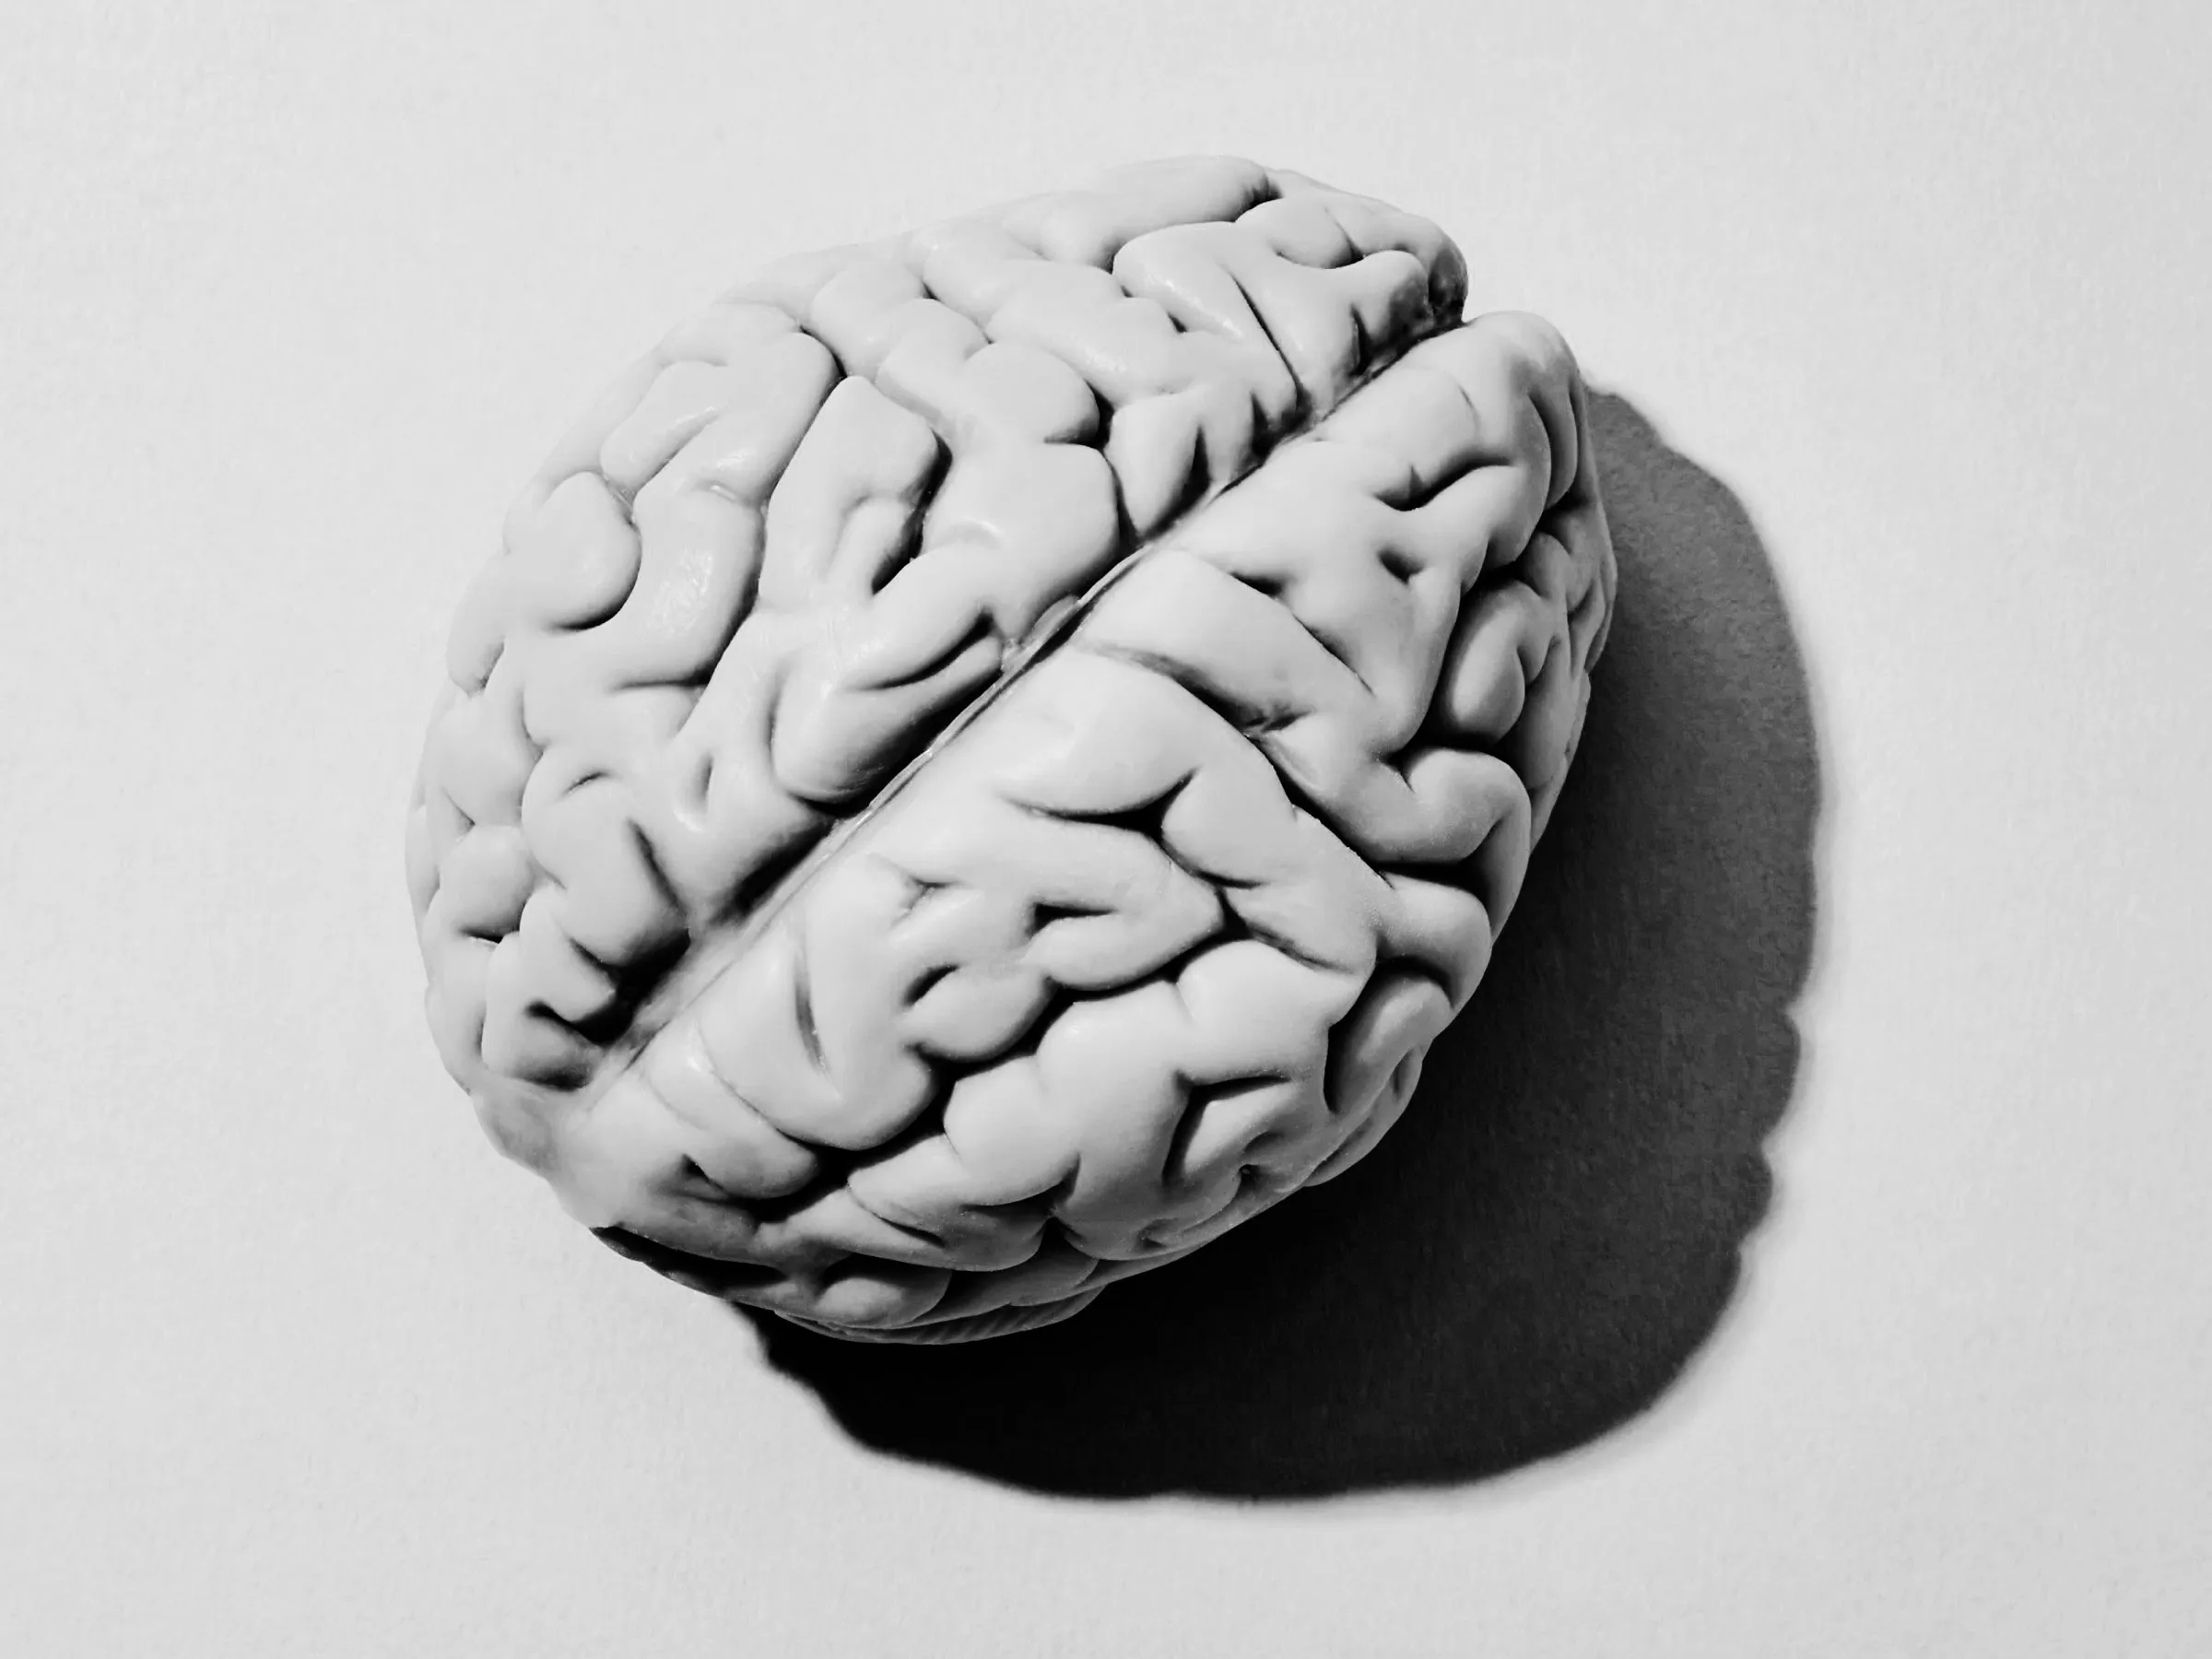 عکس مغز انسان برای چاپ بر روی کاغذ